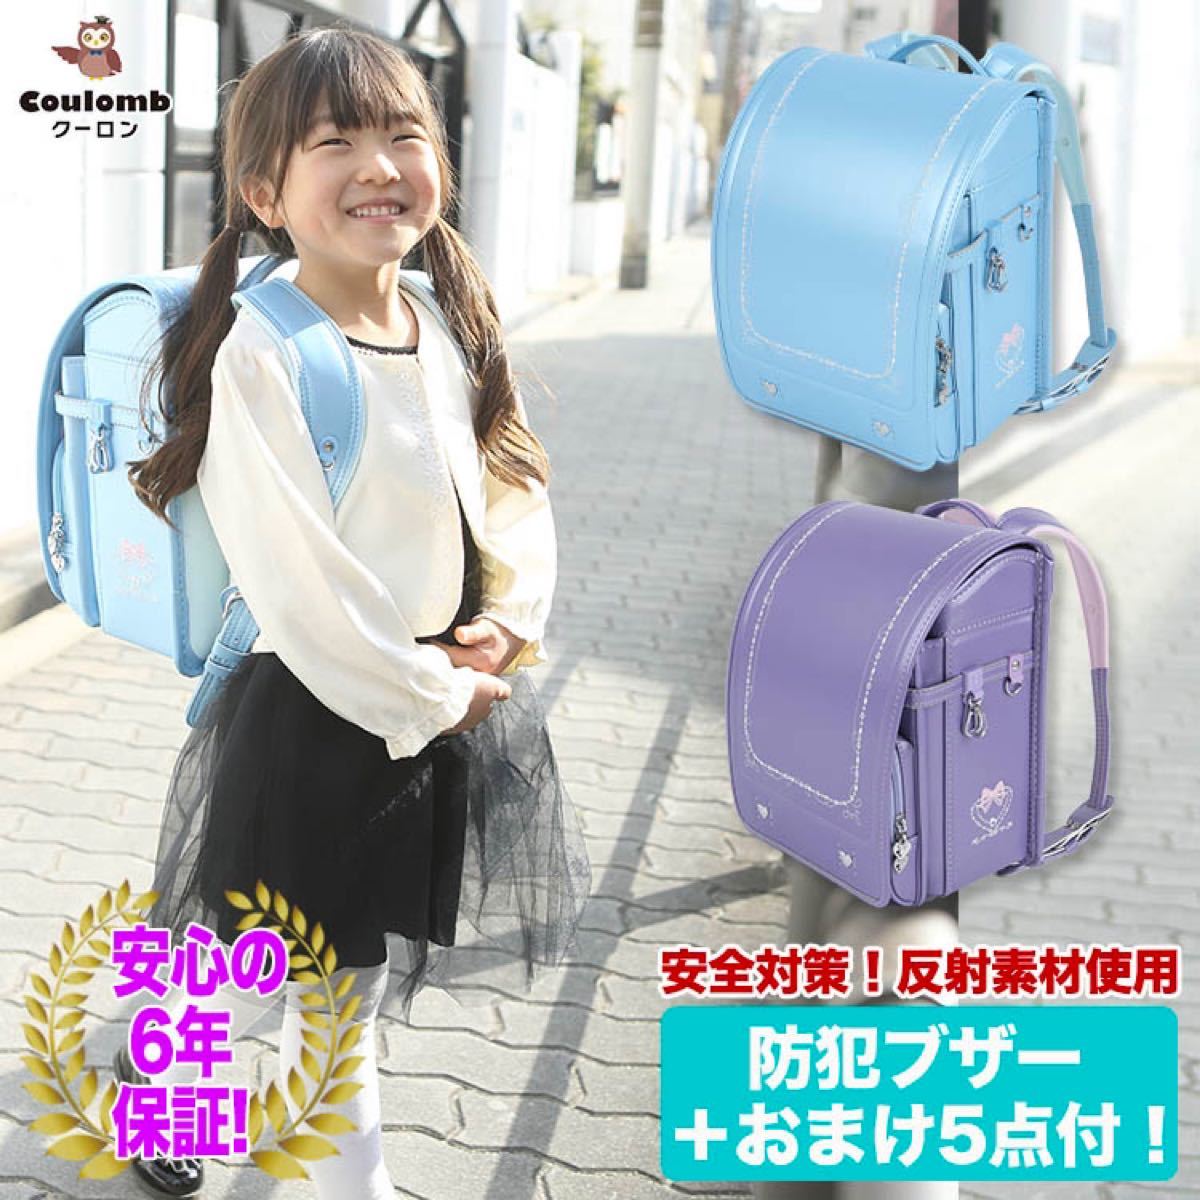 ランドセル 新品 女の子 入学祝い 入園 可愛い ブルー 刺繍 高品質 高級 バッグ 最安値特売